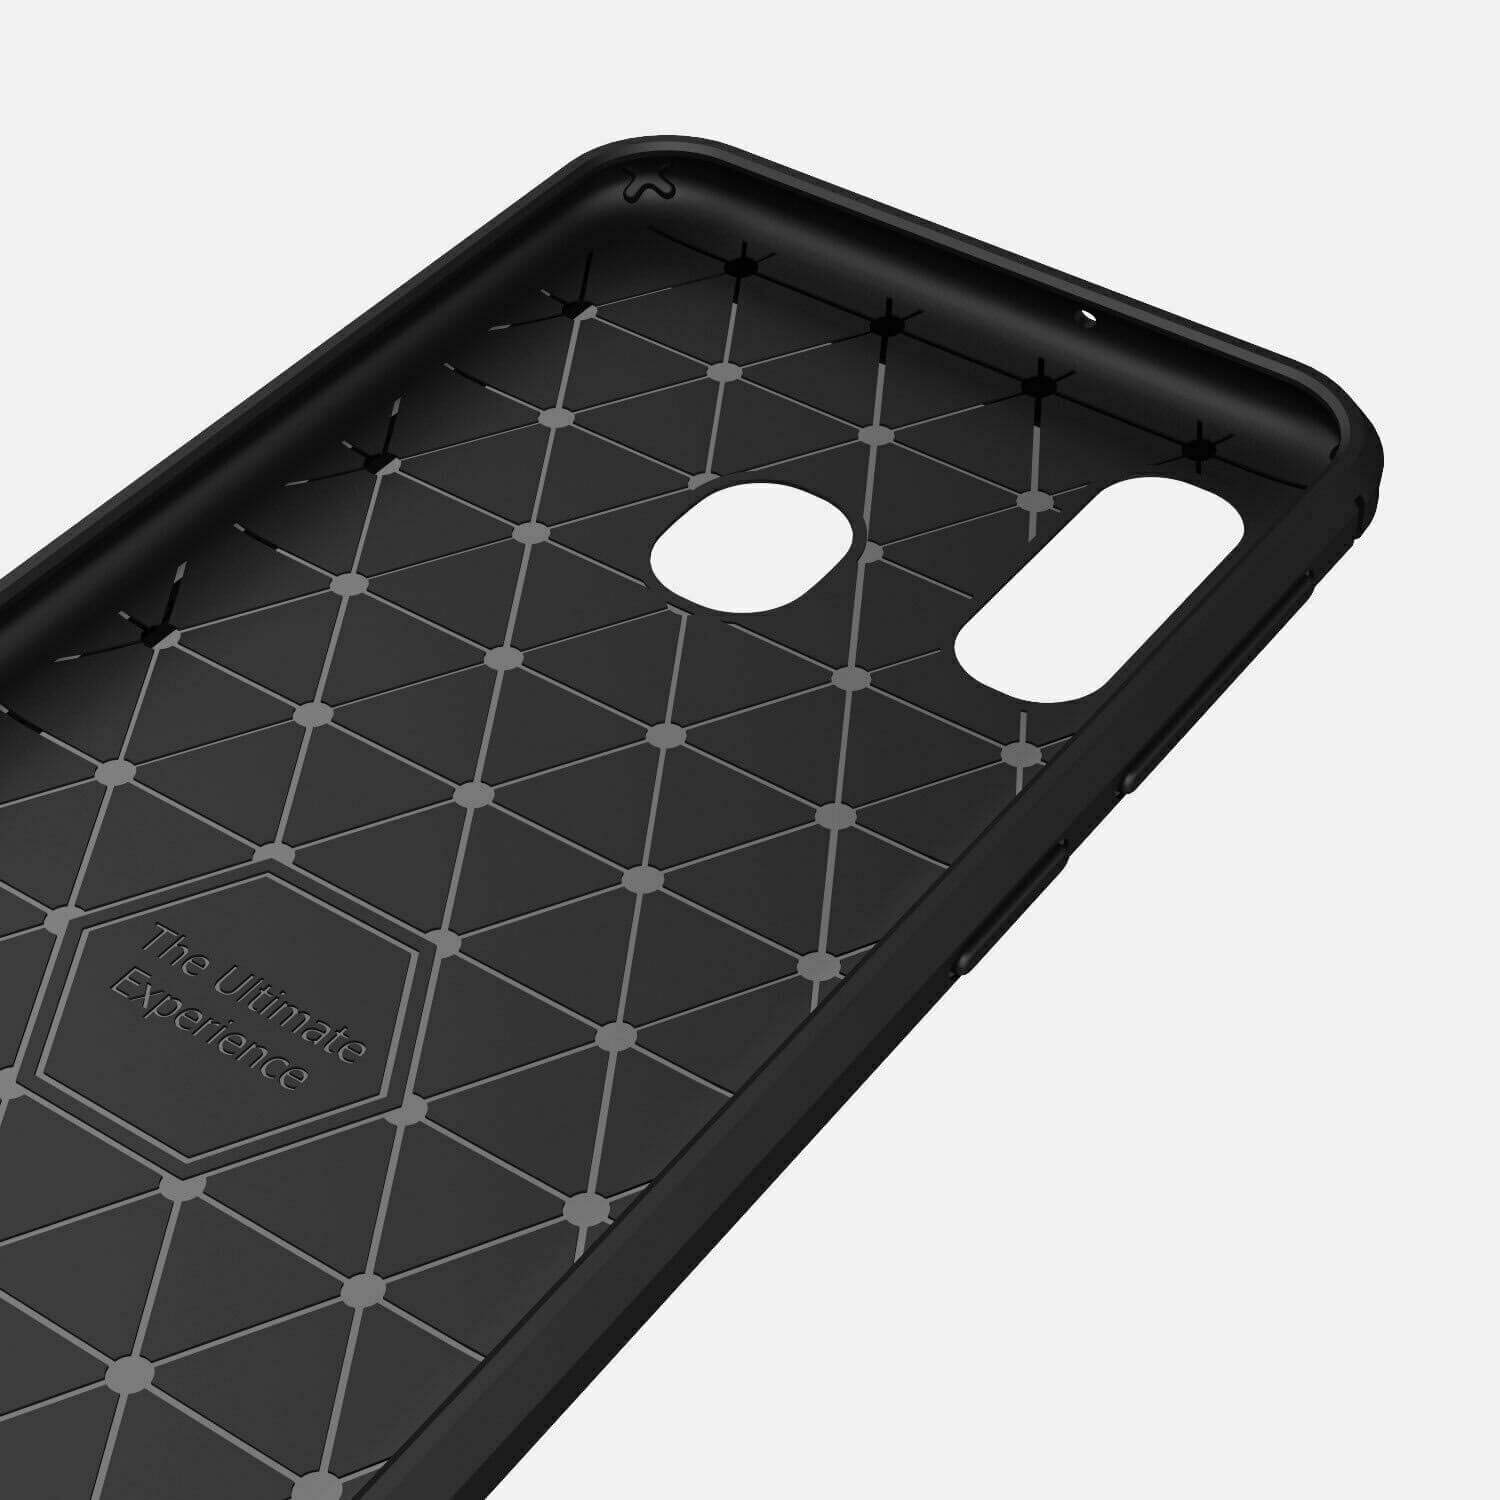 For Samsung Galaxy A20e Carbon Fibre Design Case TPU Cover - Black